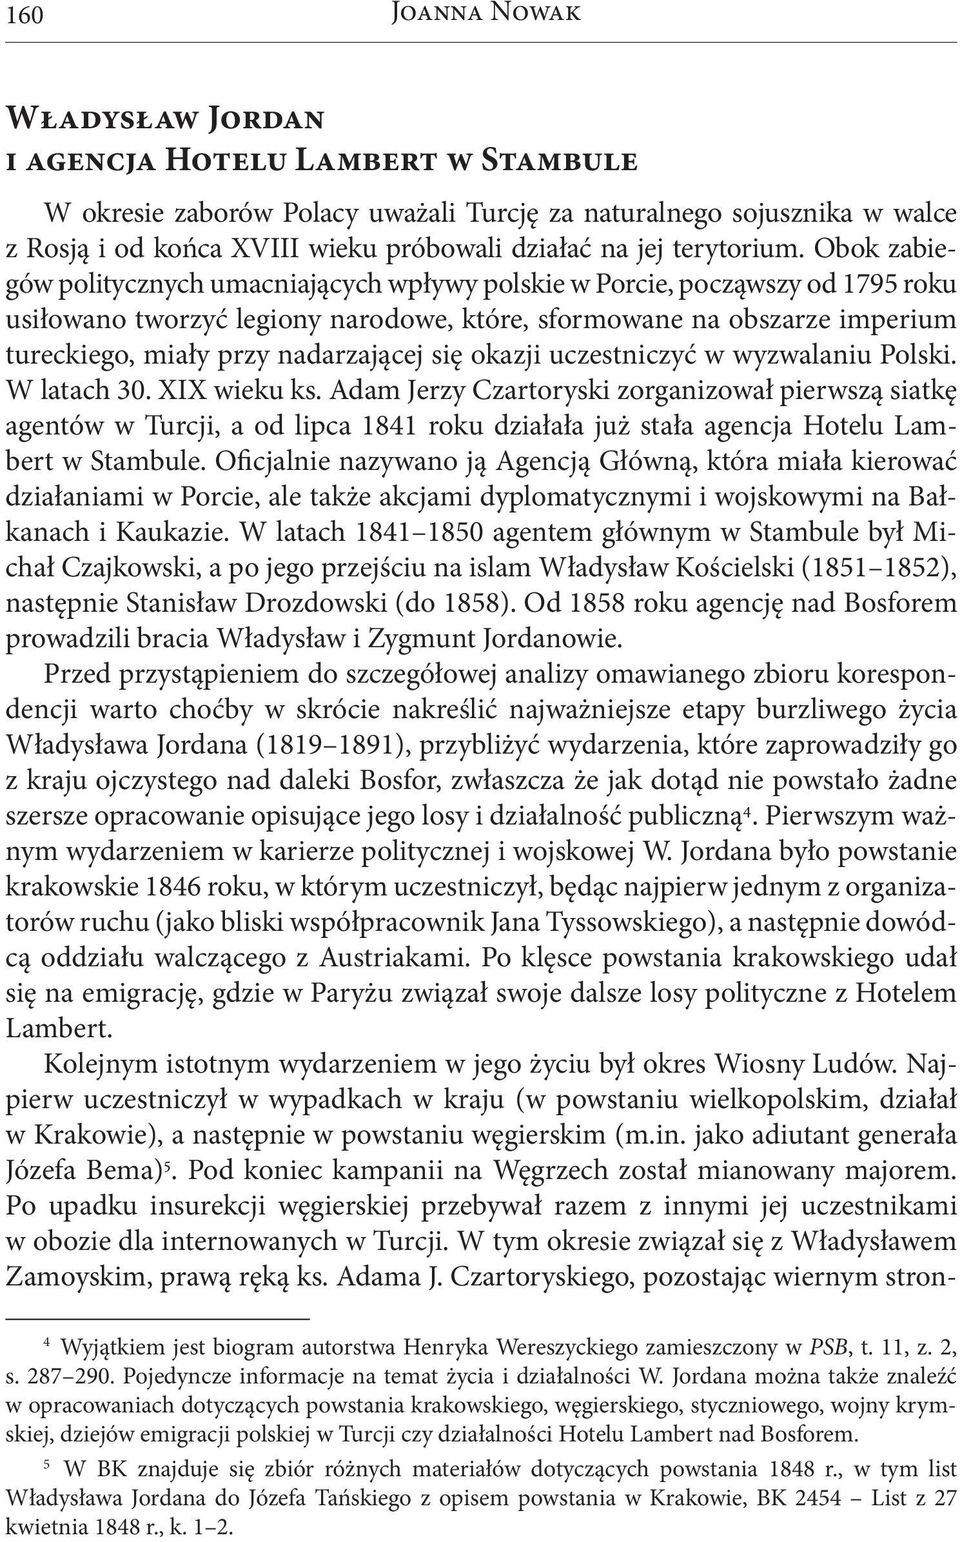 Obok zabiegów politycznych umacniających wpływy polskie w Porcie, począwszy od 1795 roku usiłowano tworzyć legiony narodowe, które, sformowane na obszarze imperium tureckiego, miały przy nadarzającej